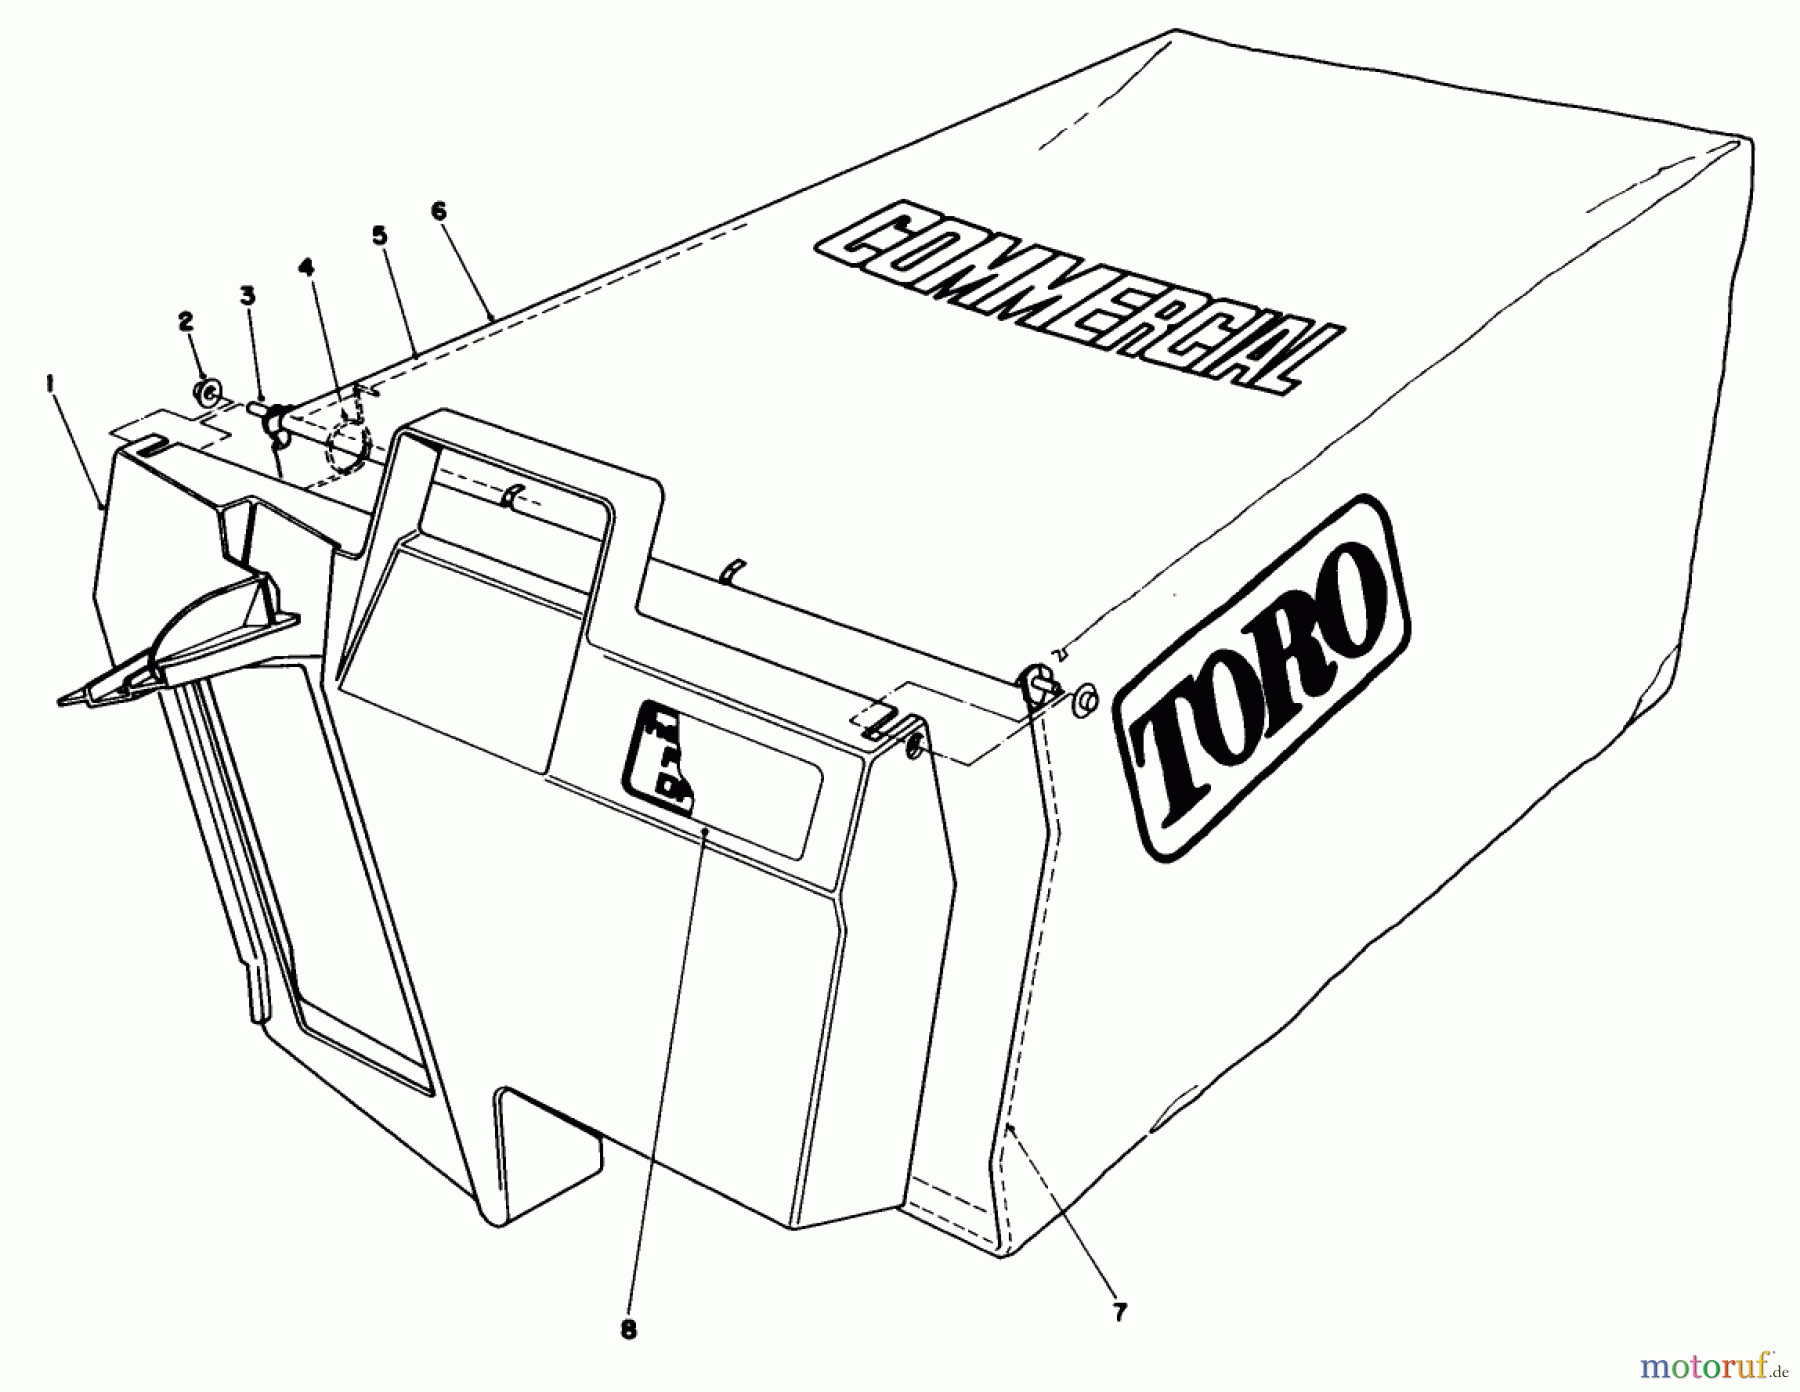  Toro Neu Mowers, Walk-Behind Seite 2 22030 - Toro Lawnmower, 1985 (5000001-5999999) GRASS BAG ASSEMBLY NO. 11-5609